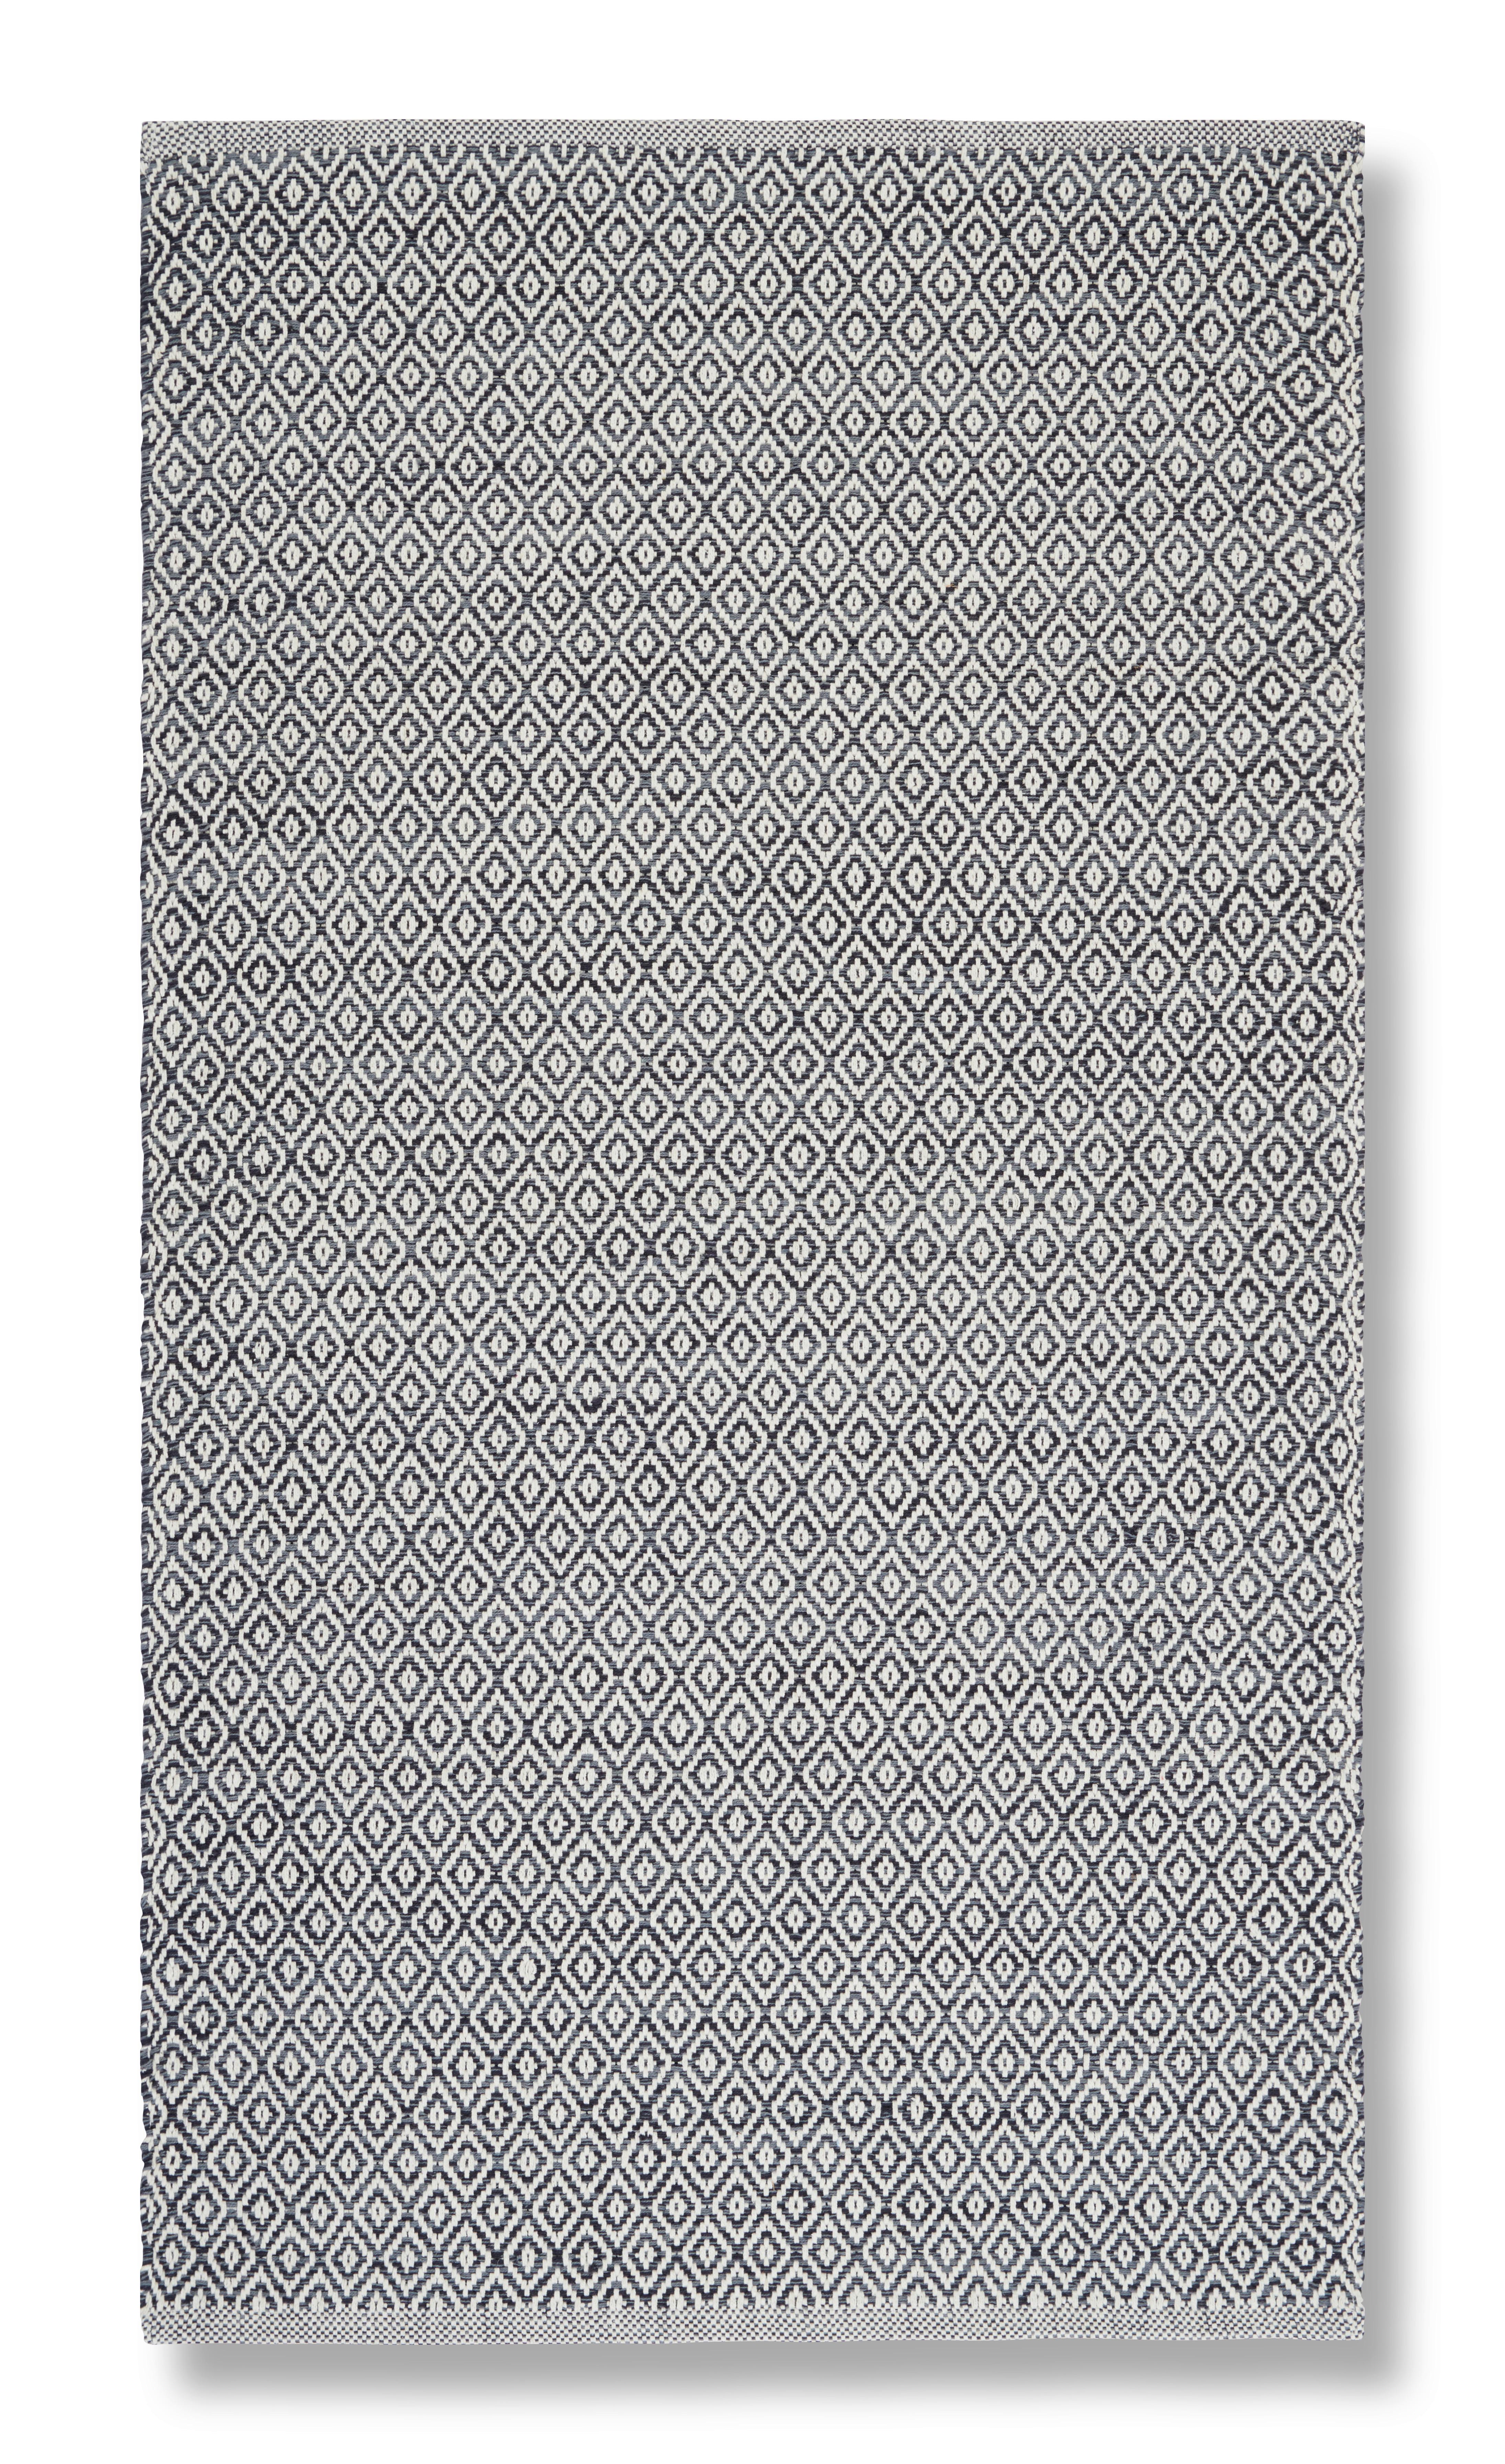 Covor țesut de mână CAROLA 1 - gri, Basics, textil (80/150cm) - Modern Living